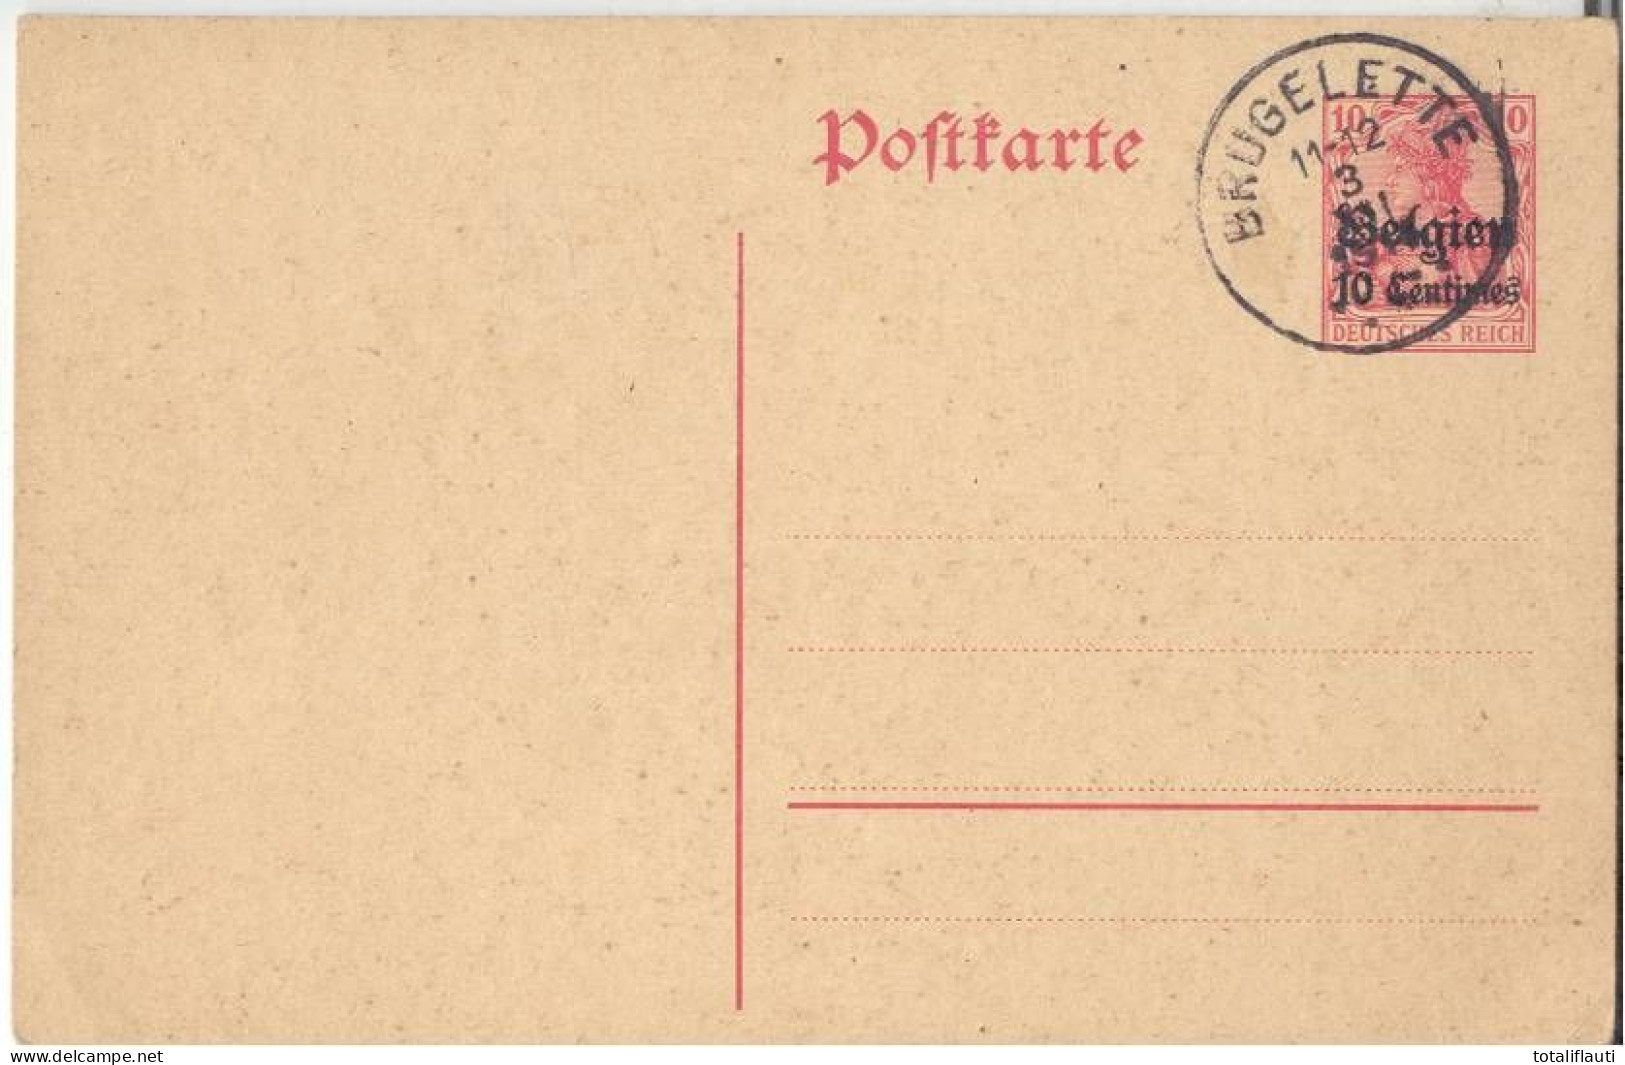 Ganzsache Deutsches Reich 10 Pfennig Überdruck Belgien 10 Centimes Mit Ortsstempel BRUGELETTE 3.8.1915 Ungelaufen - Deutsche Armee